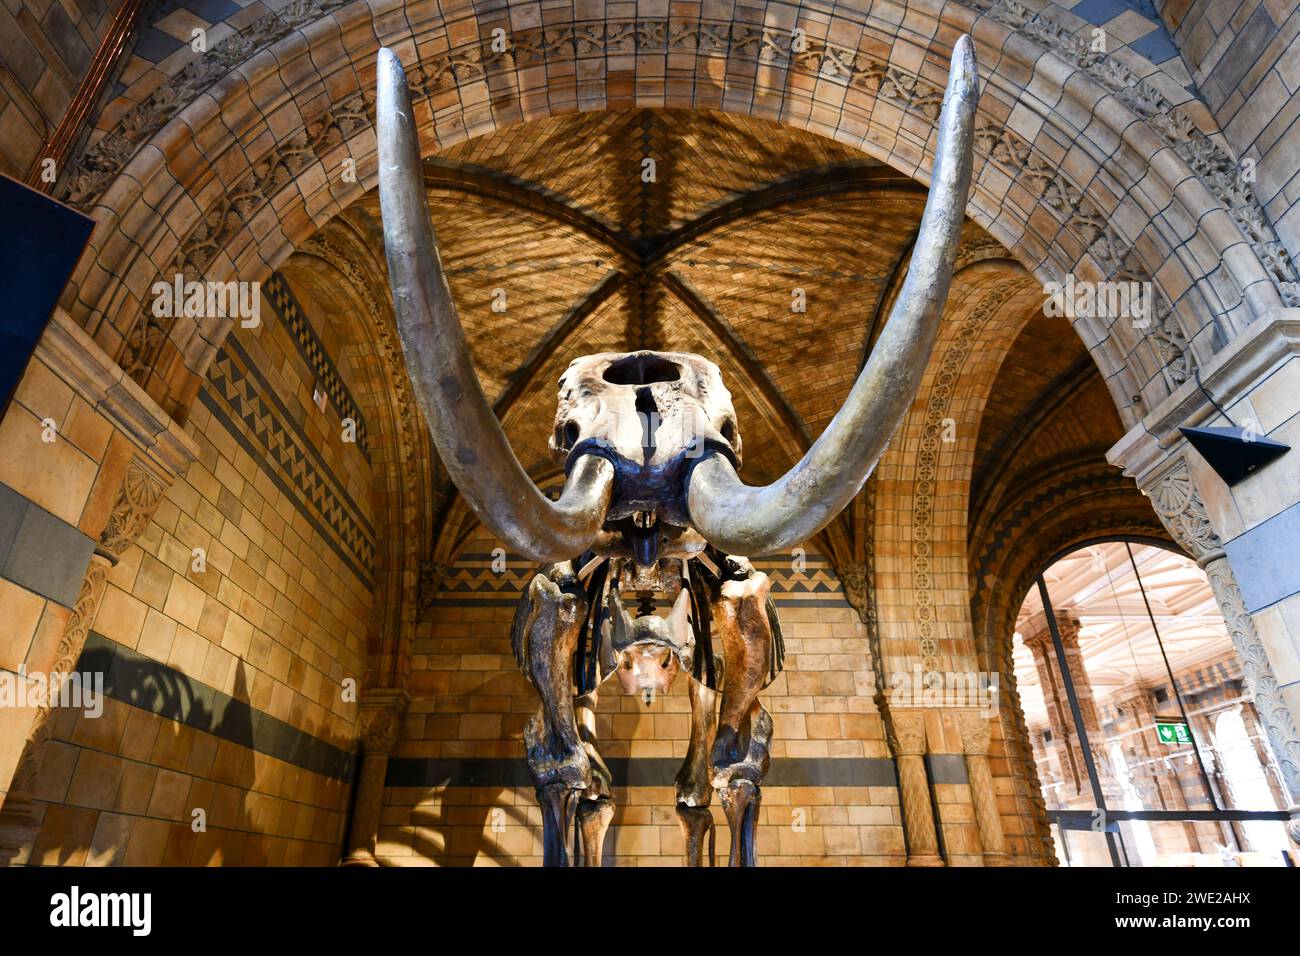 Londres, Royaume-Uni - 28 août 2022 : squelette de mammouth laineux à l'intérieur du musée d'histoire naturelle, un bâtiment emblématique et une attraction touristique populaire à Kensington Banque D'Images